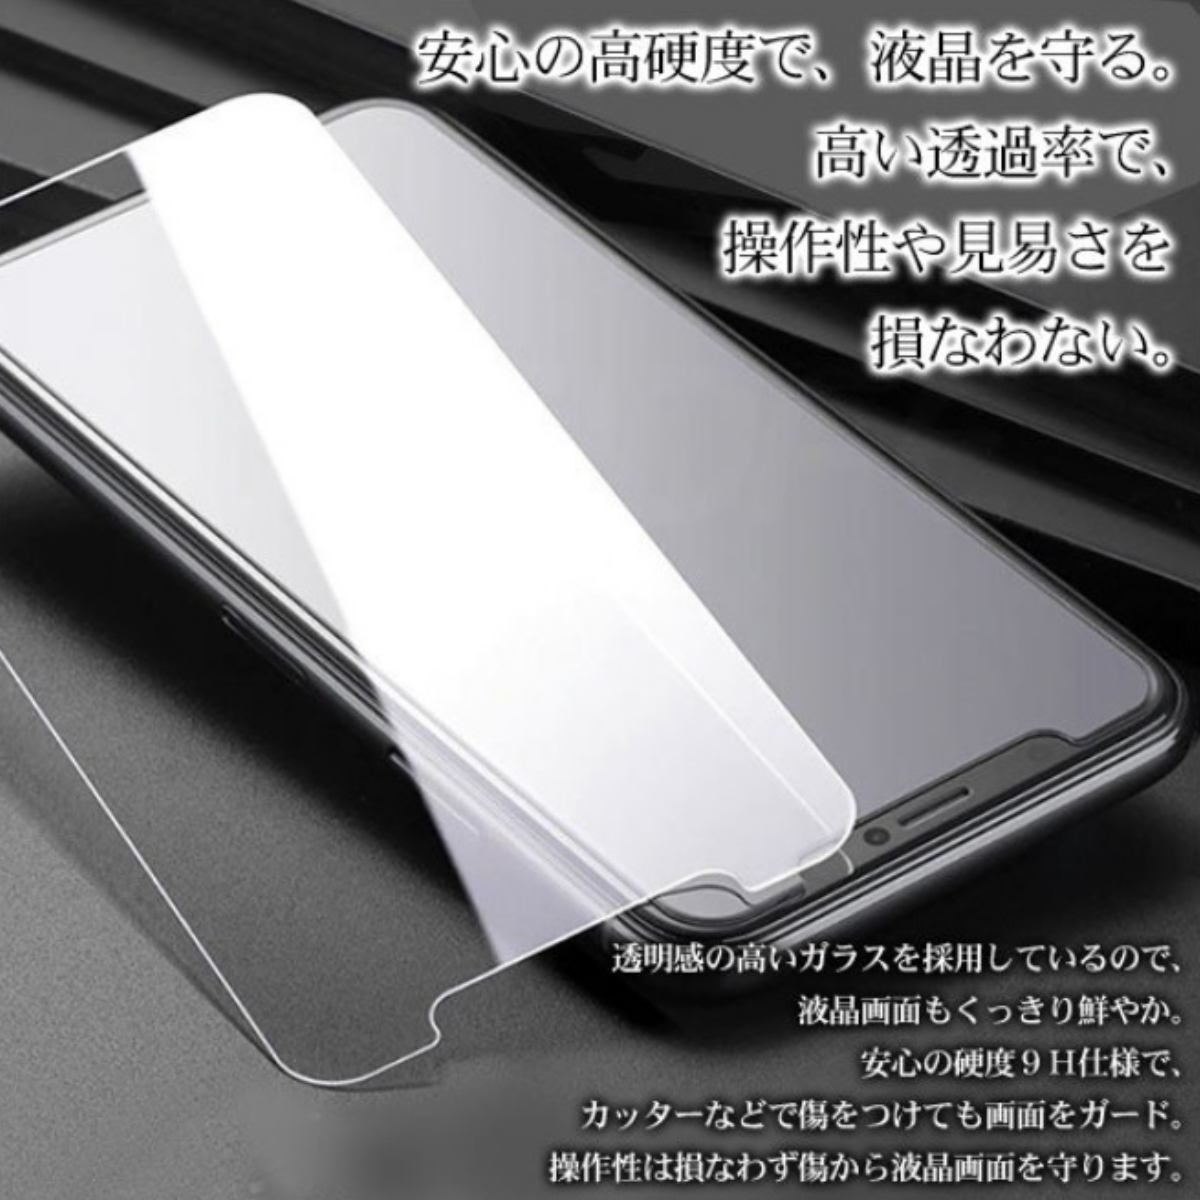 【送料無料】 2枚セット iPhone XR / iPhone11 保護ガラス / 指紋防止 / フレーム無し / ガラスフィルム_画像4